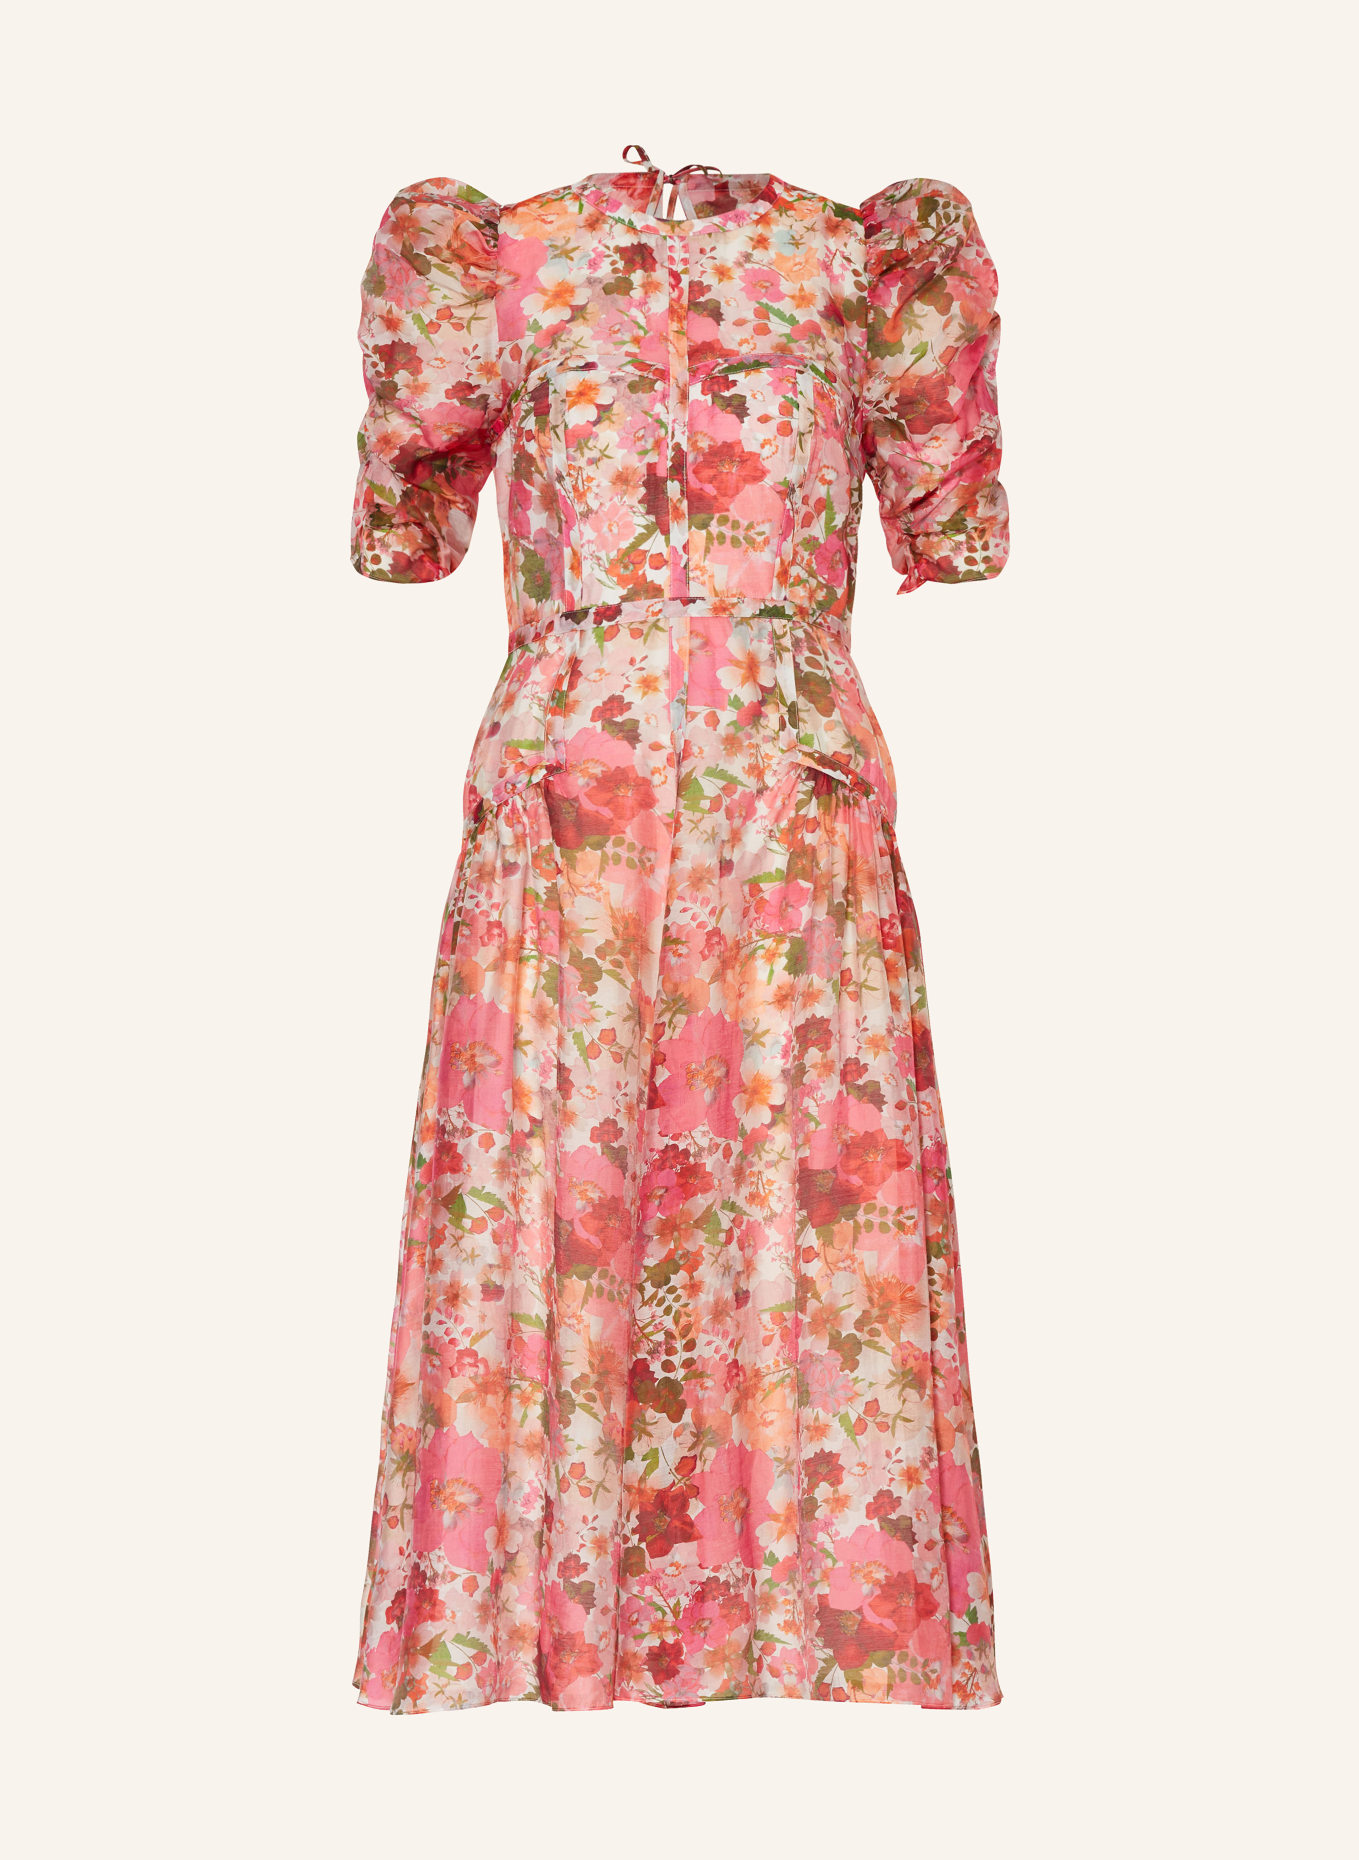 TED BAKER Kleid BOTANI mit Cut-out und Rüschen, Farbe: PINK/ ROSA/ GRÜN (Bild 1)